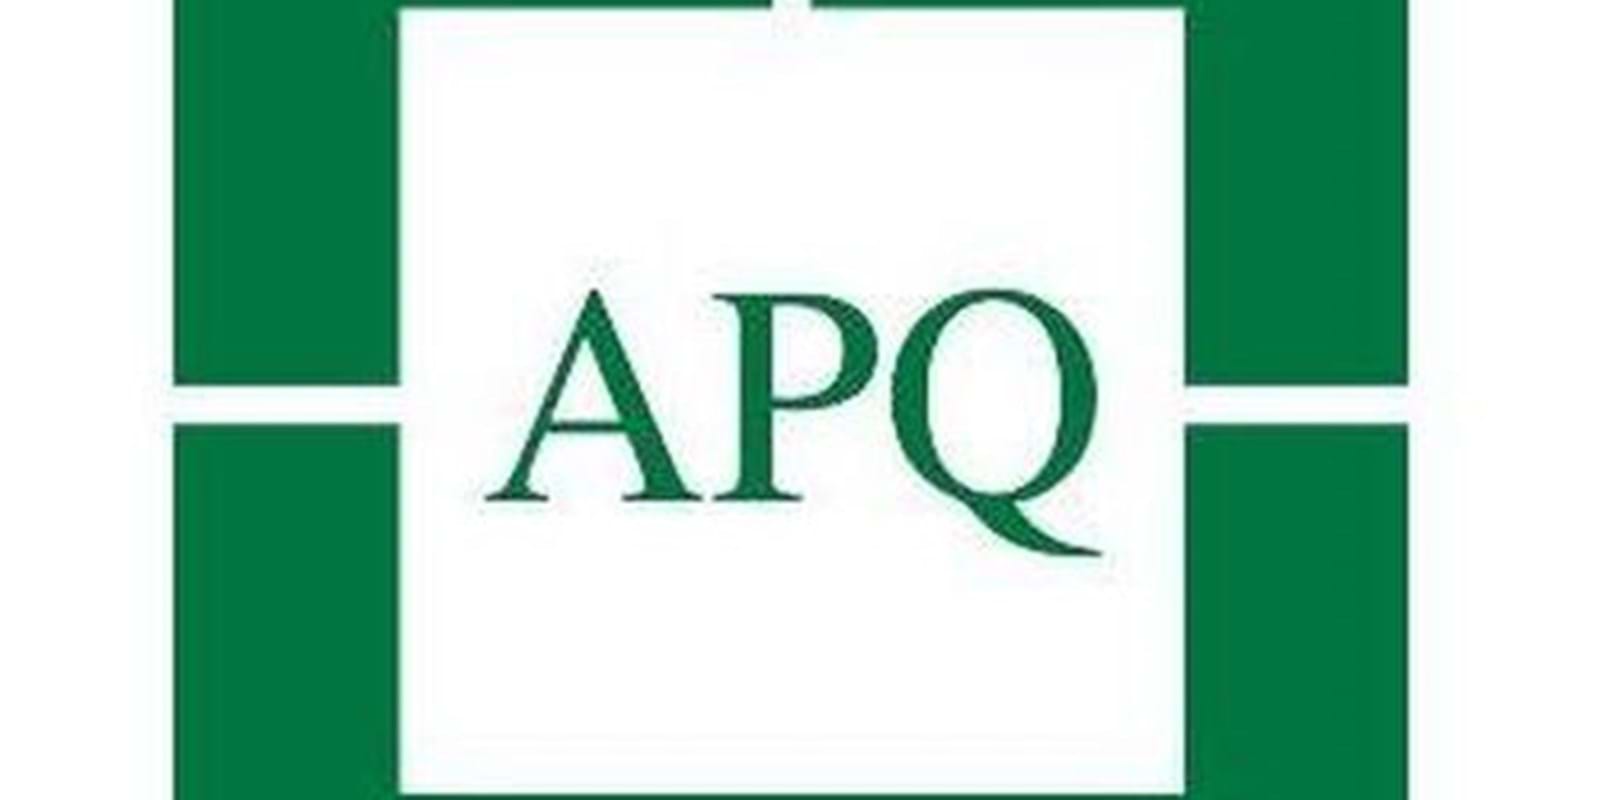 L'Association des propriétaires du Québec (APQ) : Une étude démontre que l’aide à la pierre doit cesser.